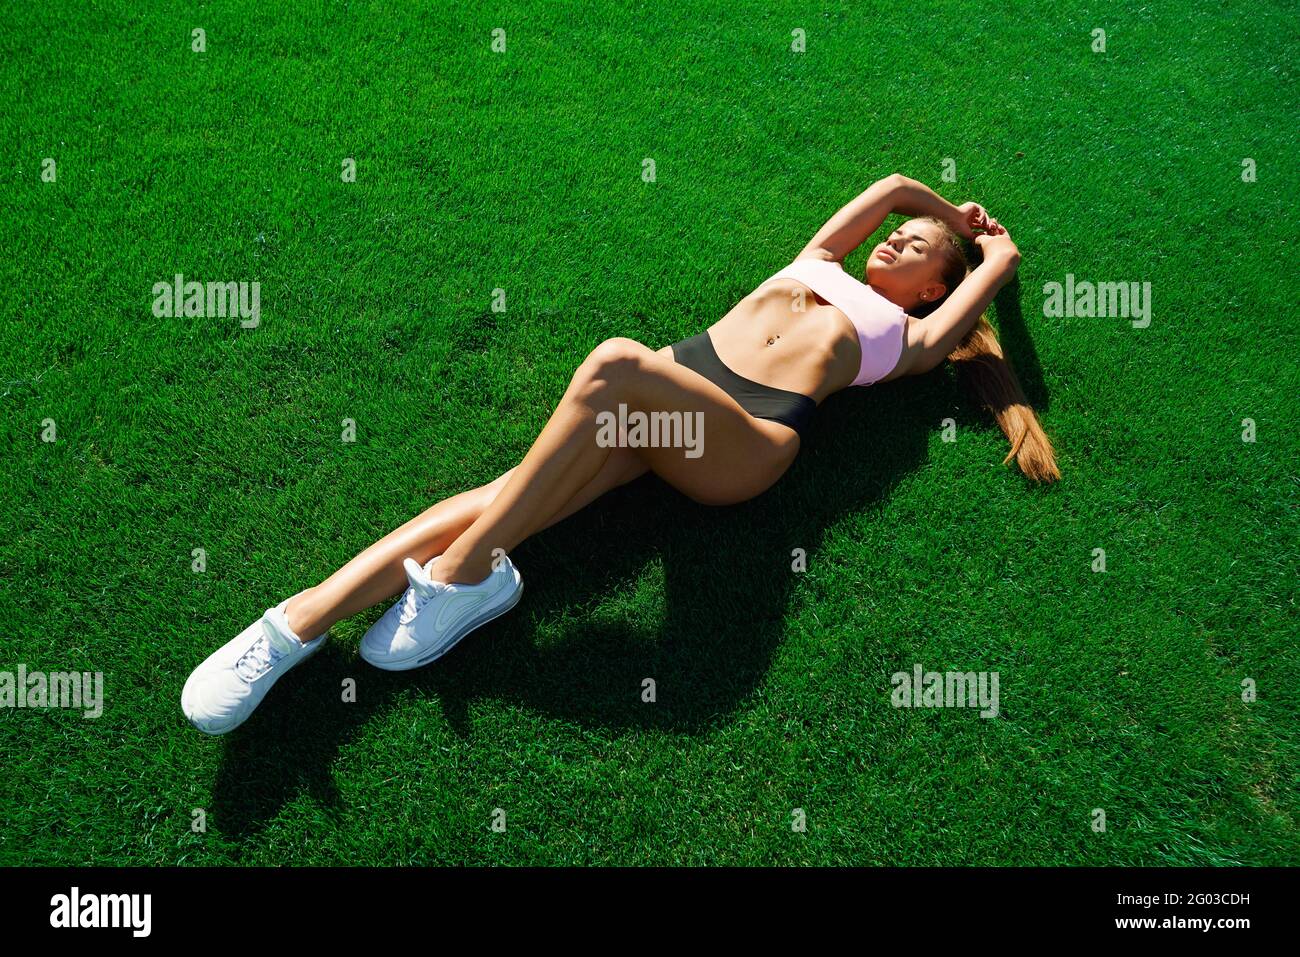 Draufsicht auf eine ziemlich junge muskulöse Läuferin, die auf frischem, hellgrünem Gras im Stadion liegt. Schöne Fitnesswoman mit Ruhe nach dem Training. Konzept des Trainings, gesunder Lebensstil. Stockfoto